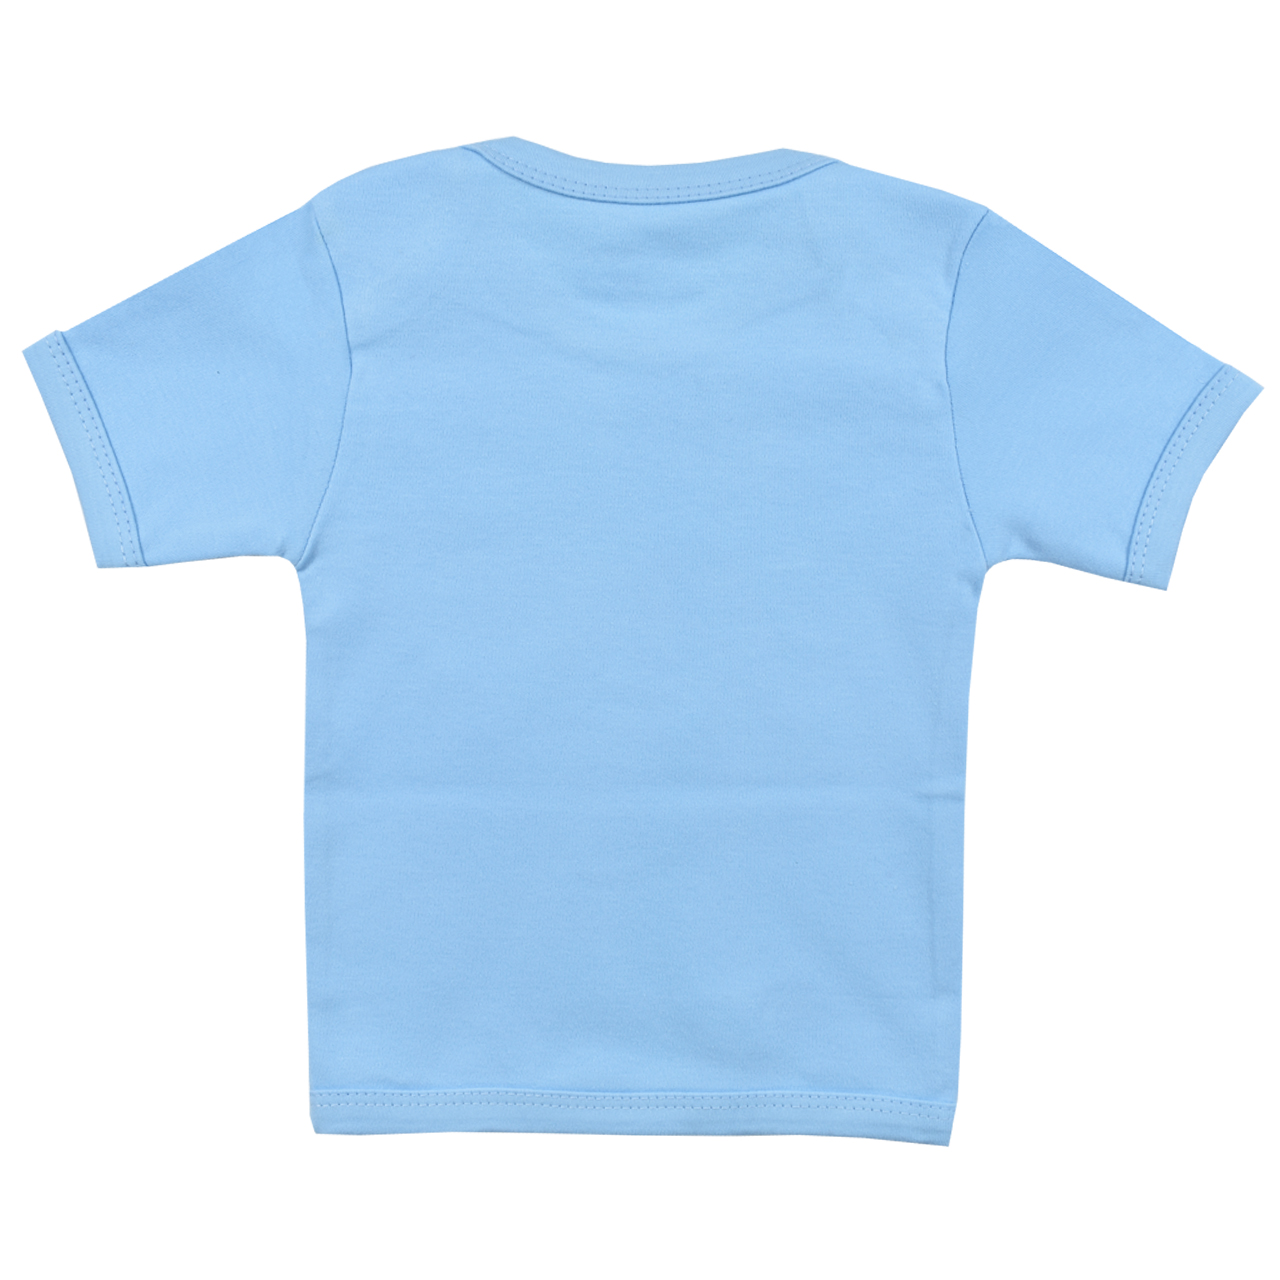 تی شرت آستین کوتاه نوزادی اسپیکو کد 300 -1 بسته دو عددی -  - 4